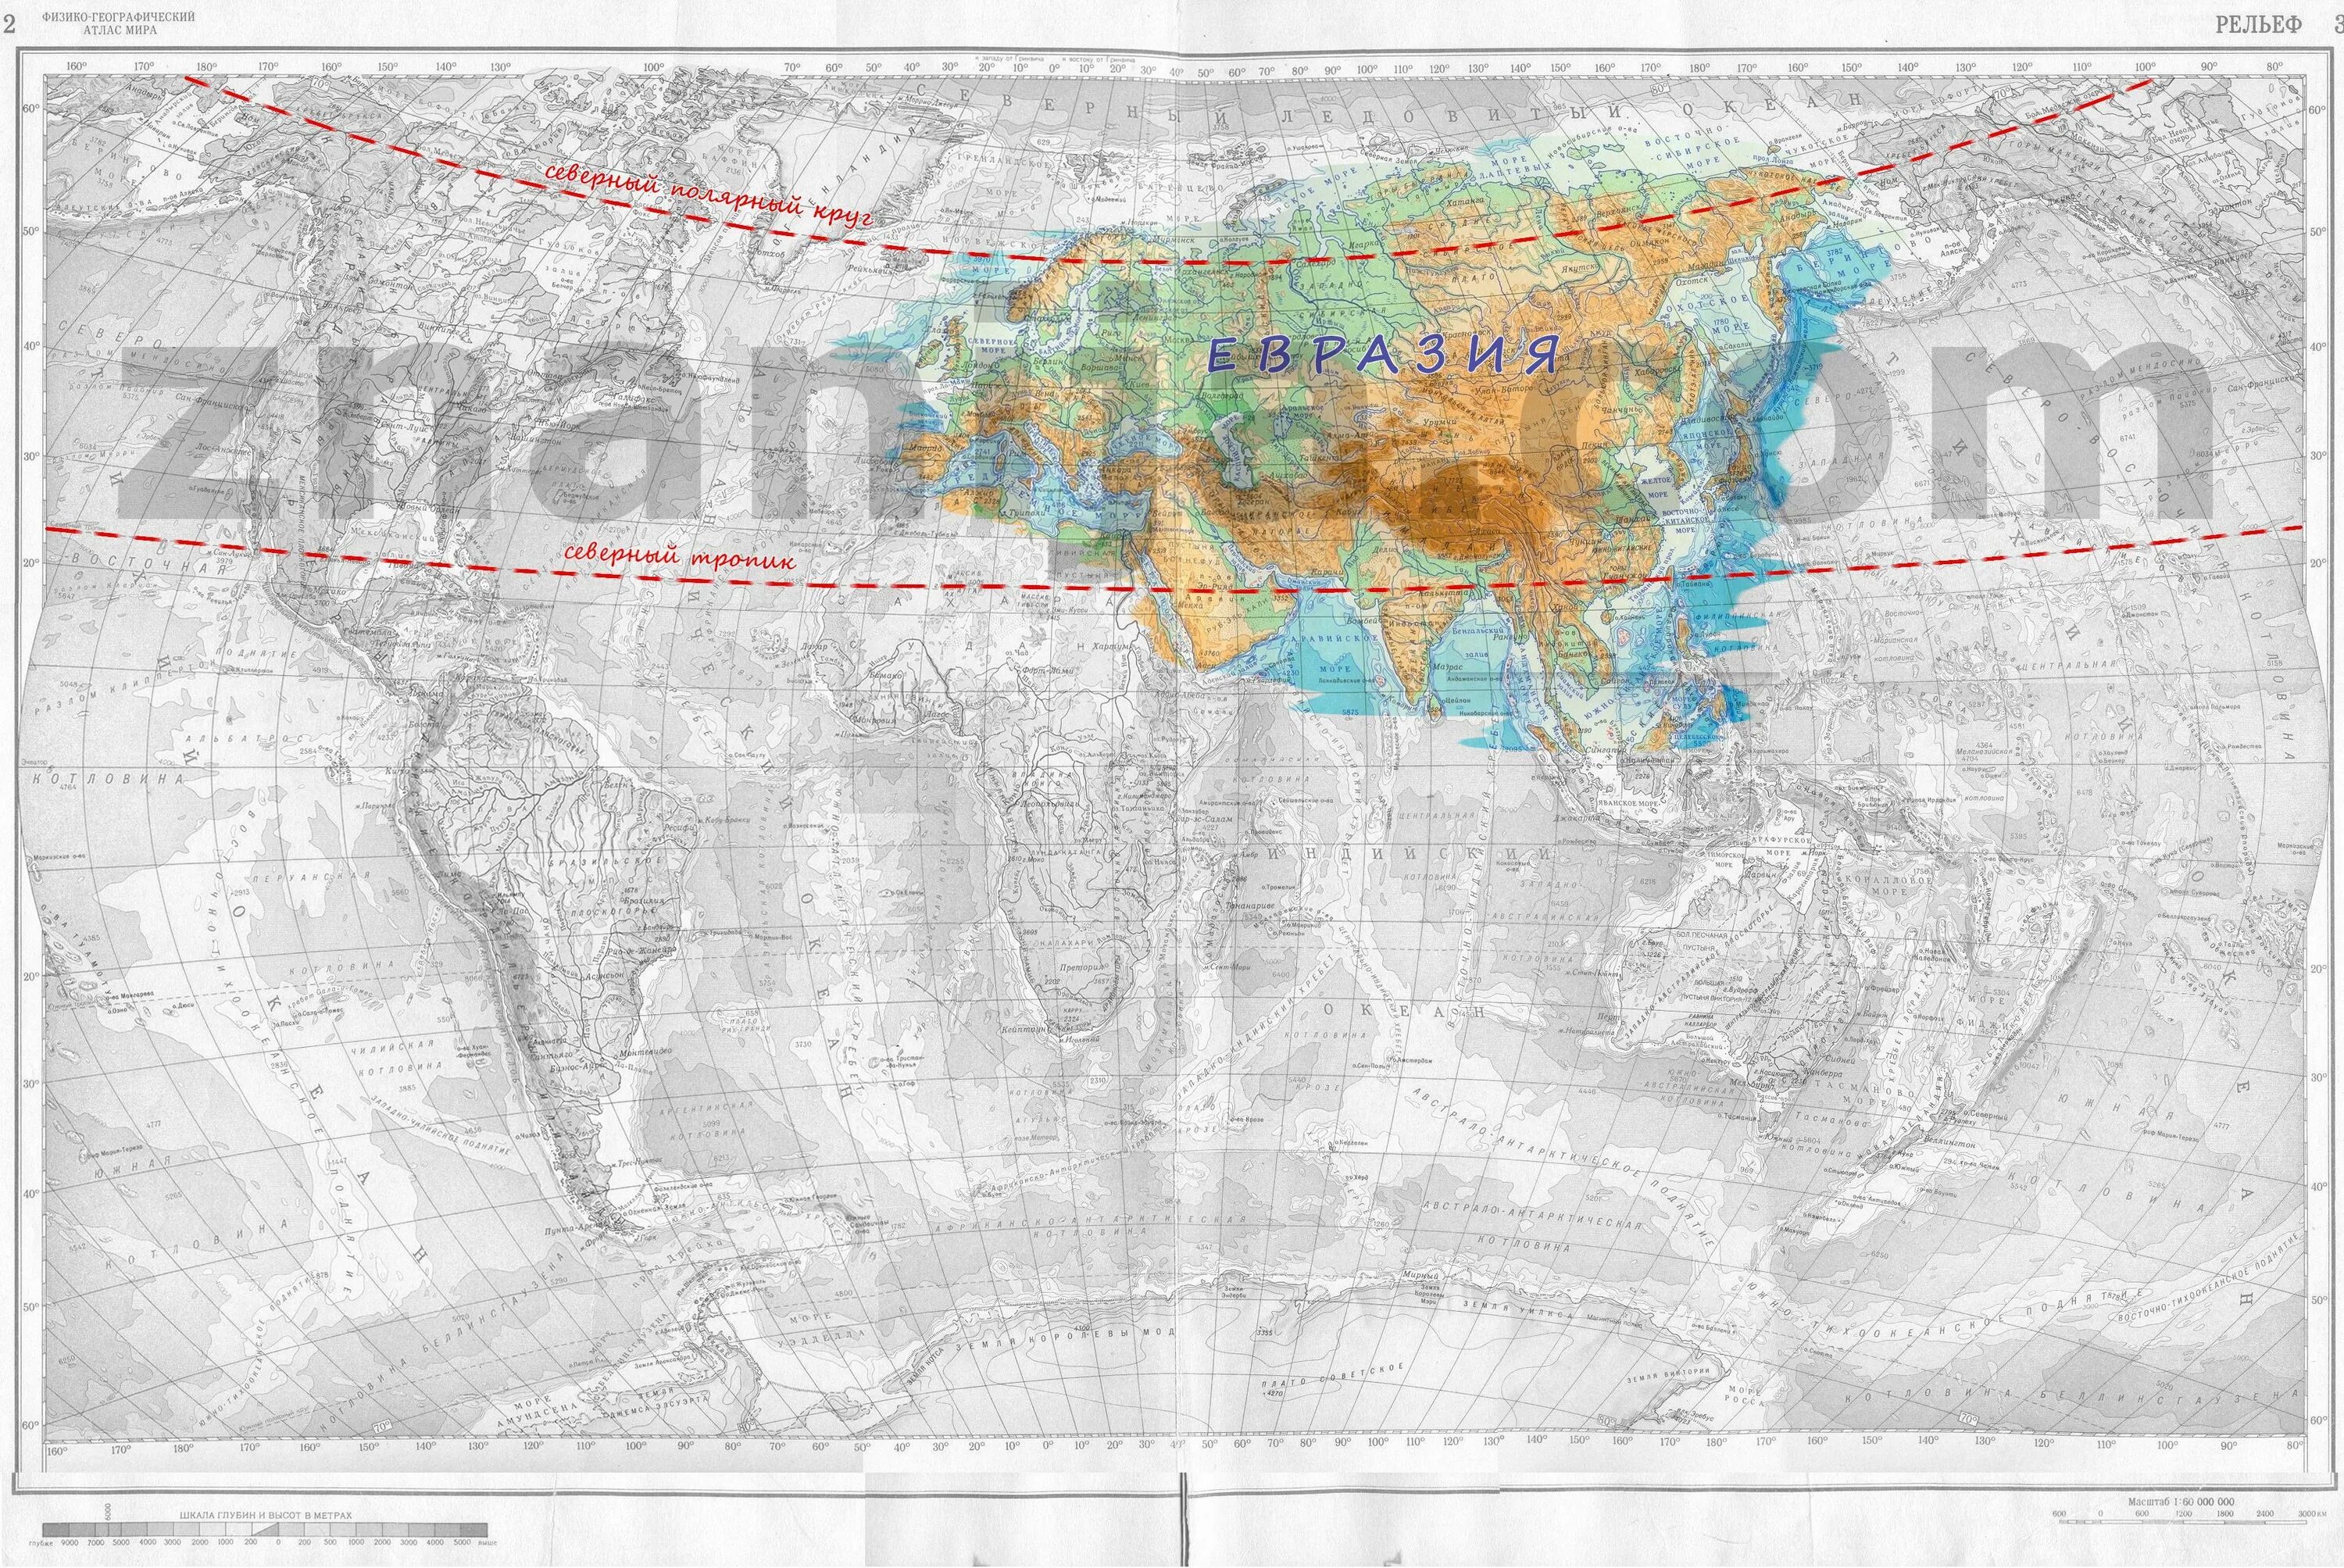 Тропики материка евразия. Северный Тропик и Северный Полярный круг на карте Евразии. Северный Тропик, Северный Полярный круг Евразия. Северный Тропик на карте Евразии. Полярный круг на карте.